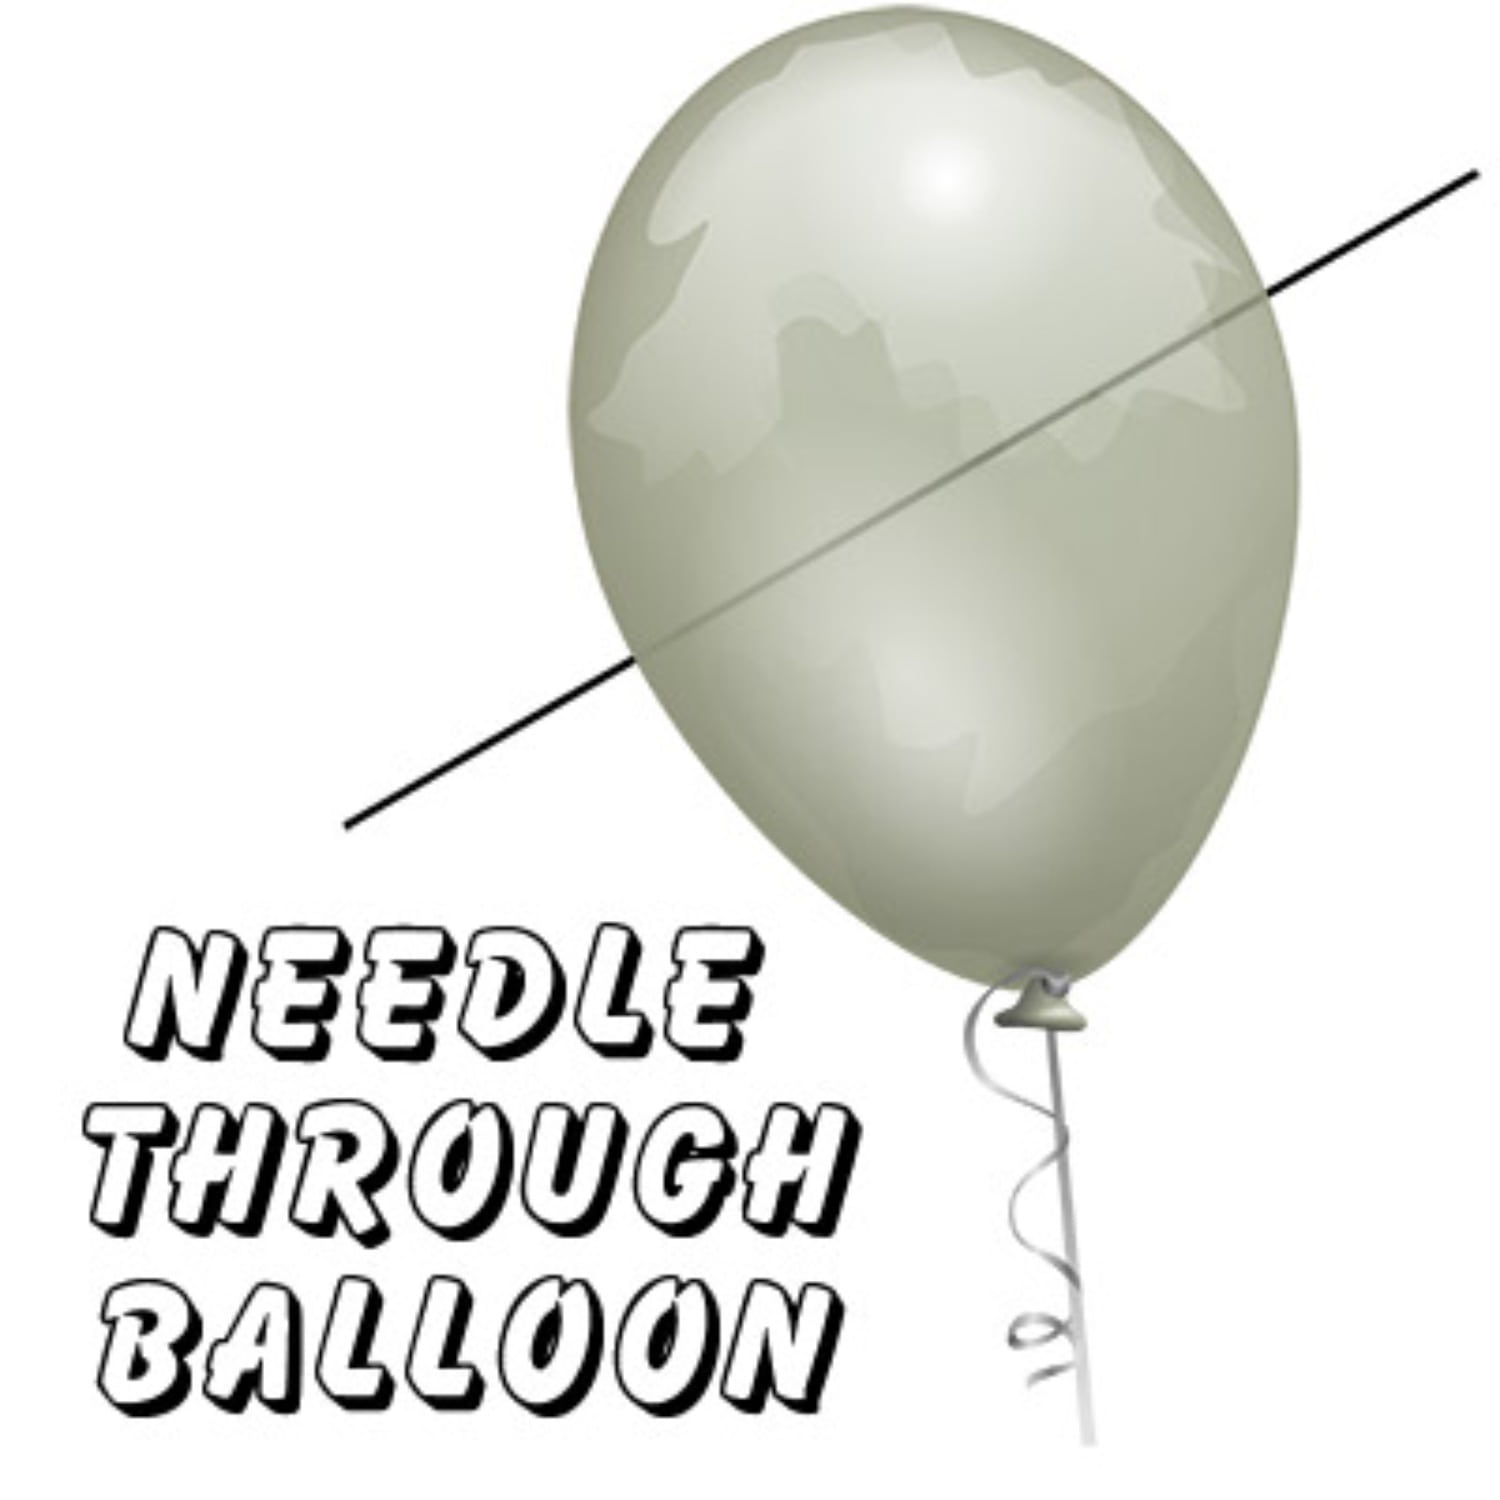 [니들쓰루벌룬]Needle Thru Balloon 실제 바늘로 풍선을 터뜨리지 않고 통과하는 마술입니다